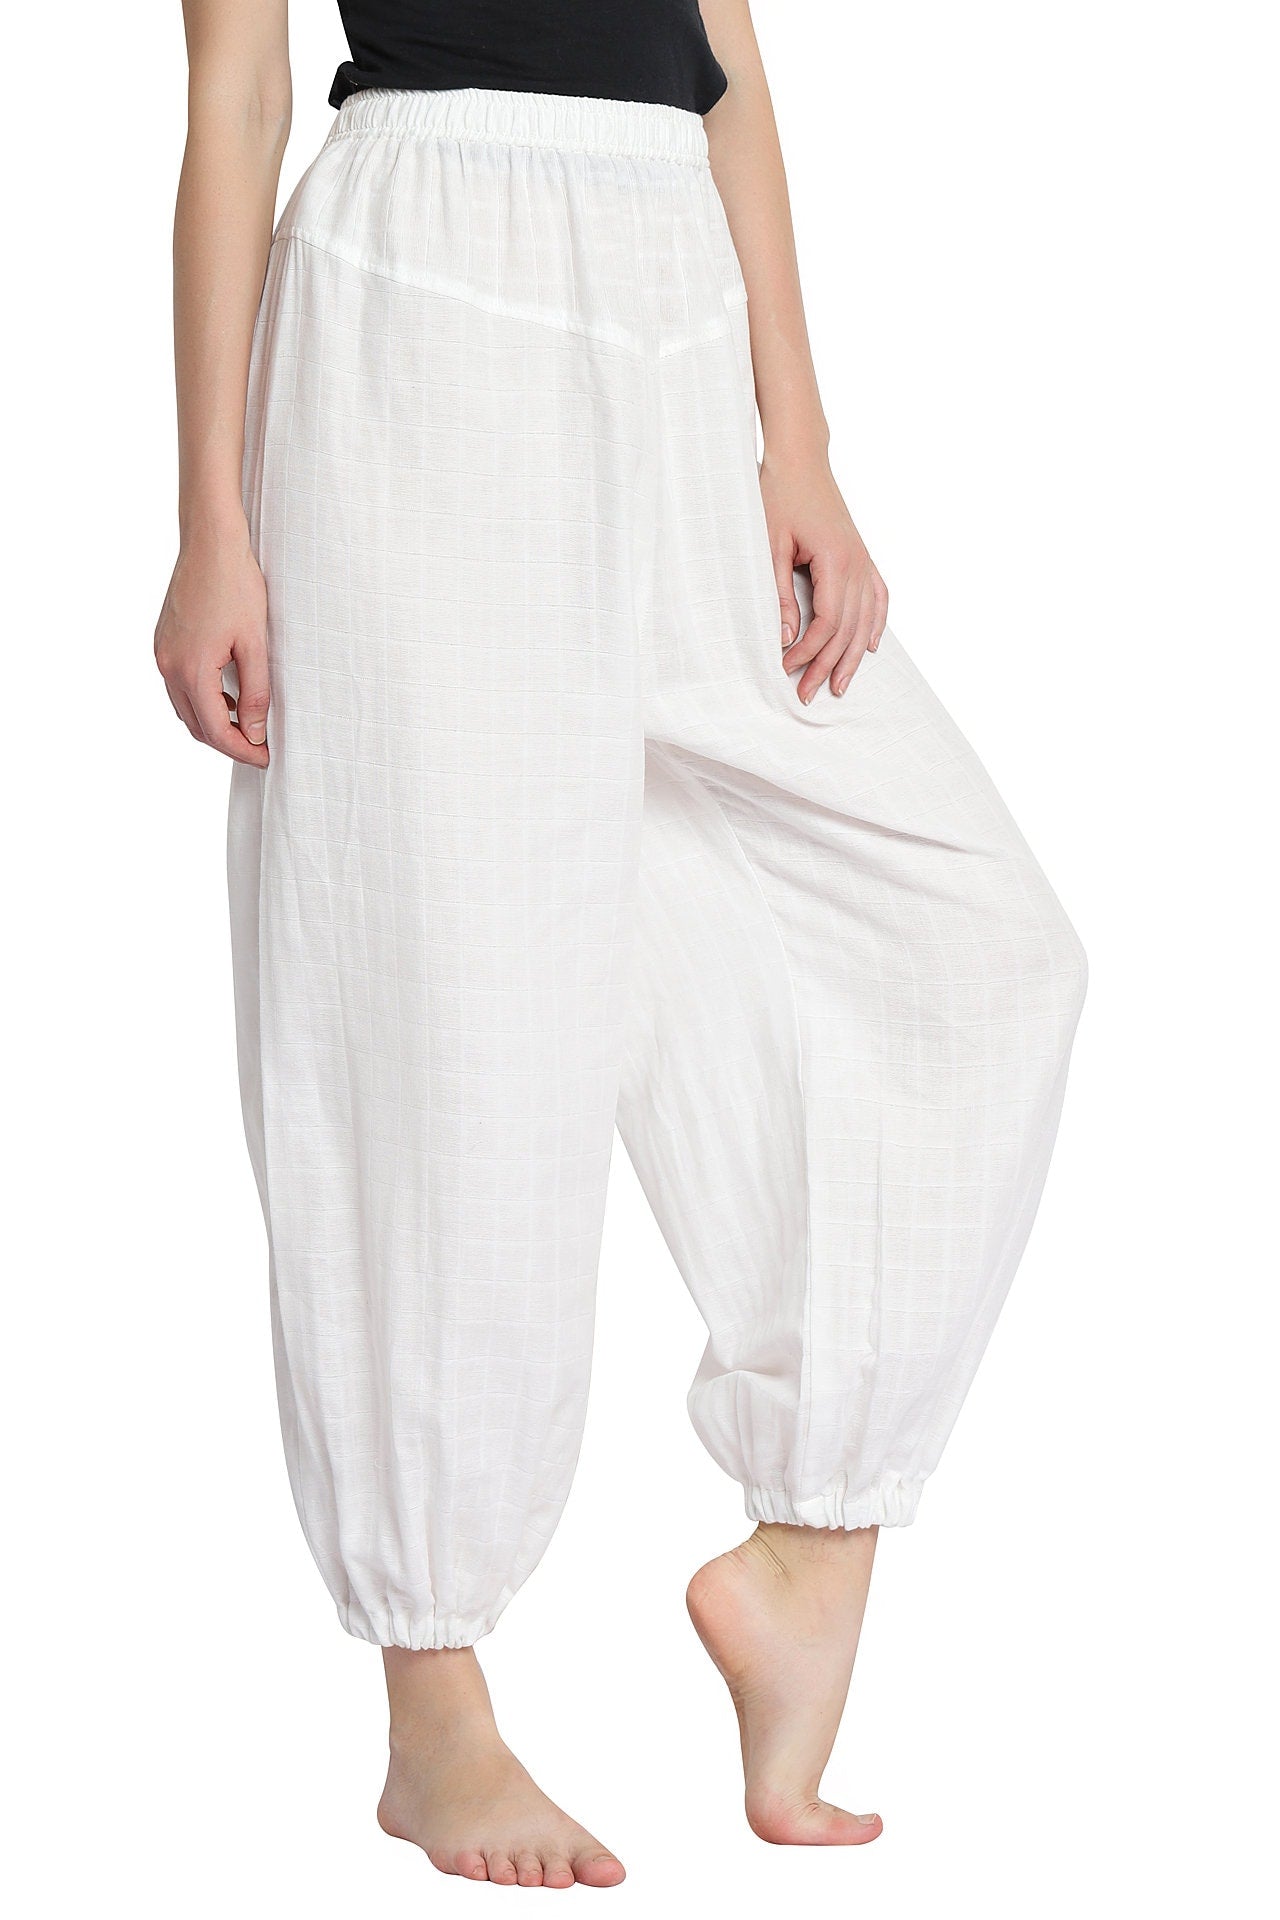 PASHA HAREM Yoga Pants in Organic Cotton - Unisex - Prancing